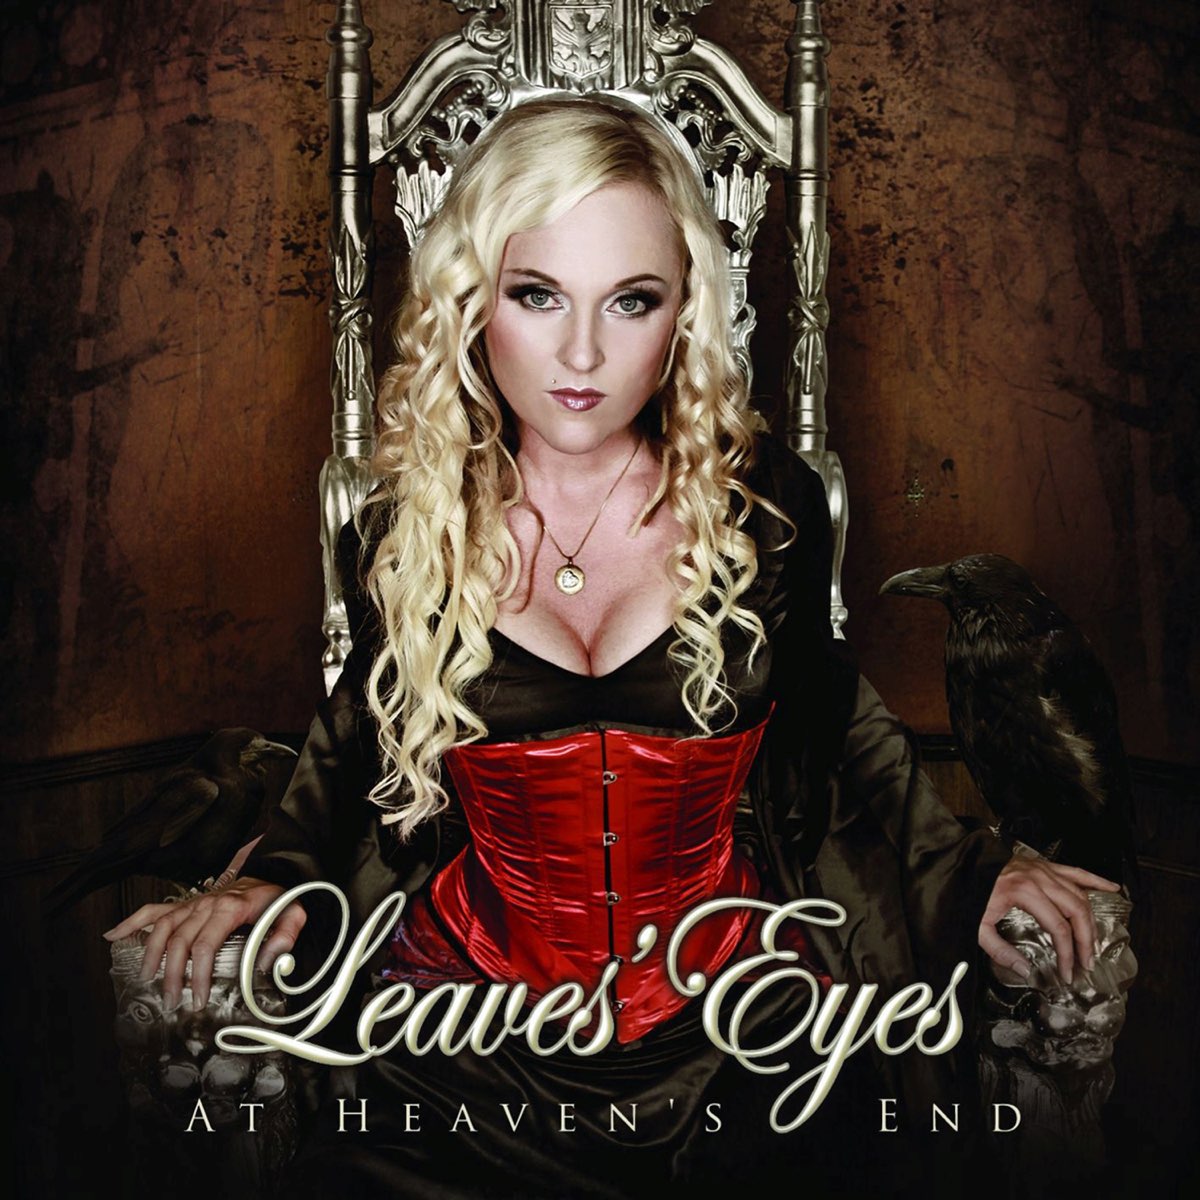 Leaves eyes myths of fate. Группа leaves’ Eyes. Leaves' Eyes - Njord (2009). Leaves Eyes вокалистка. Leaves' Eyes альбомы.